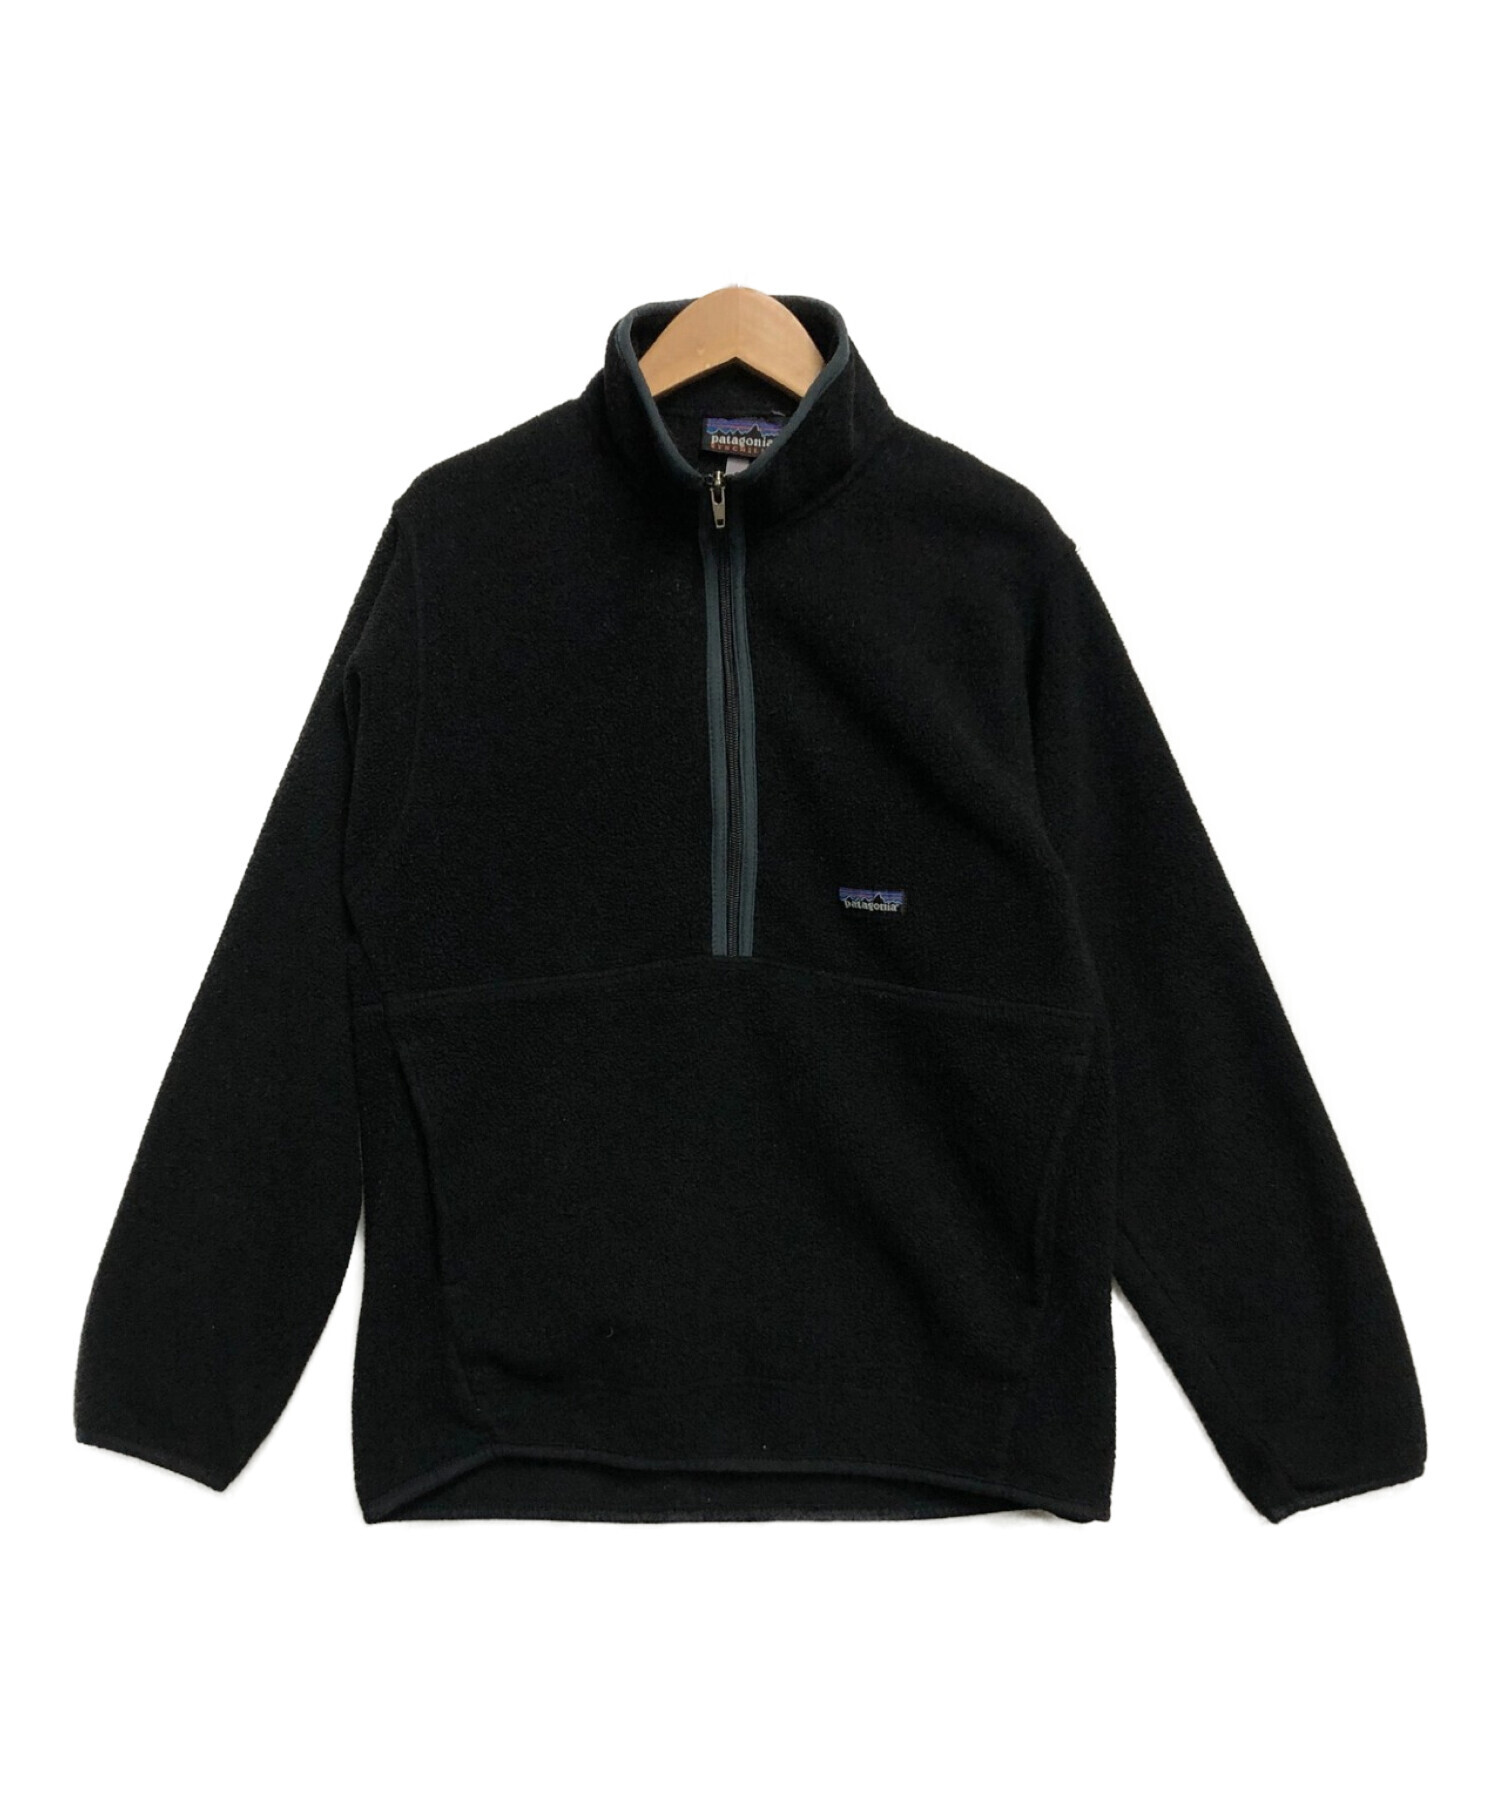 Patagonia (パタゴニア) フリースジャケット ブラック サイズ:S